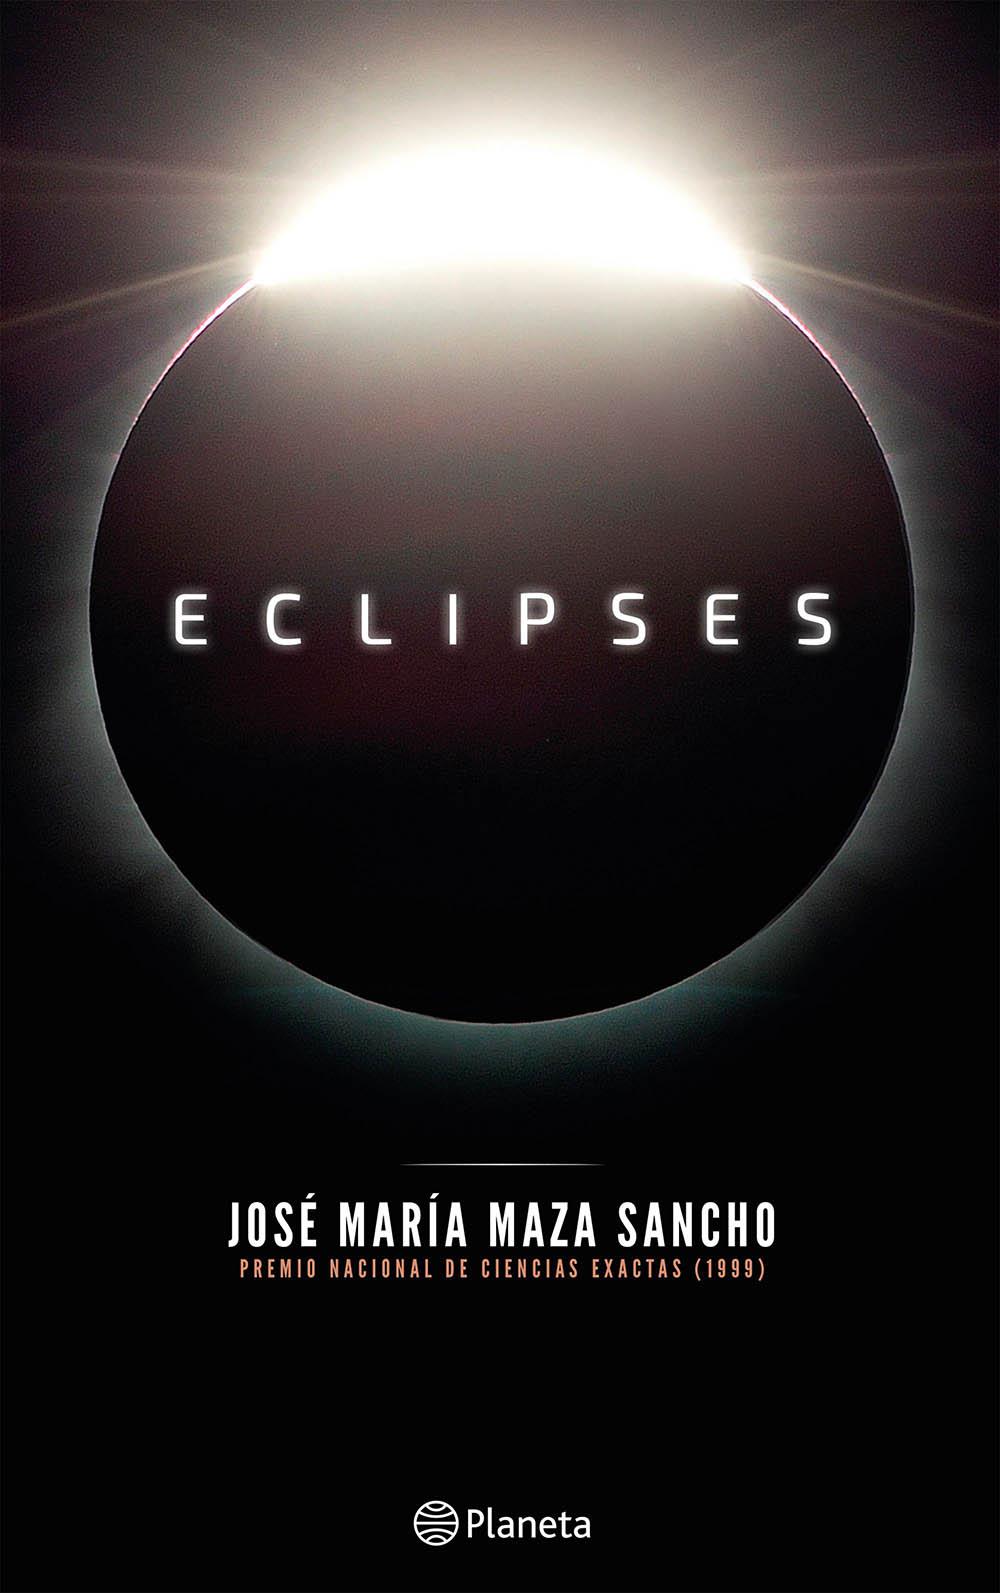 El nuevo libro hace un recorrido sobre la historia de los eclipses, los eclipses de Luna, Sol y los dos que Chile protagonizará entre el año 2019 y el 2020.